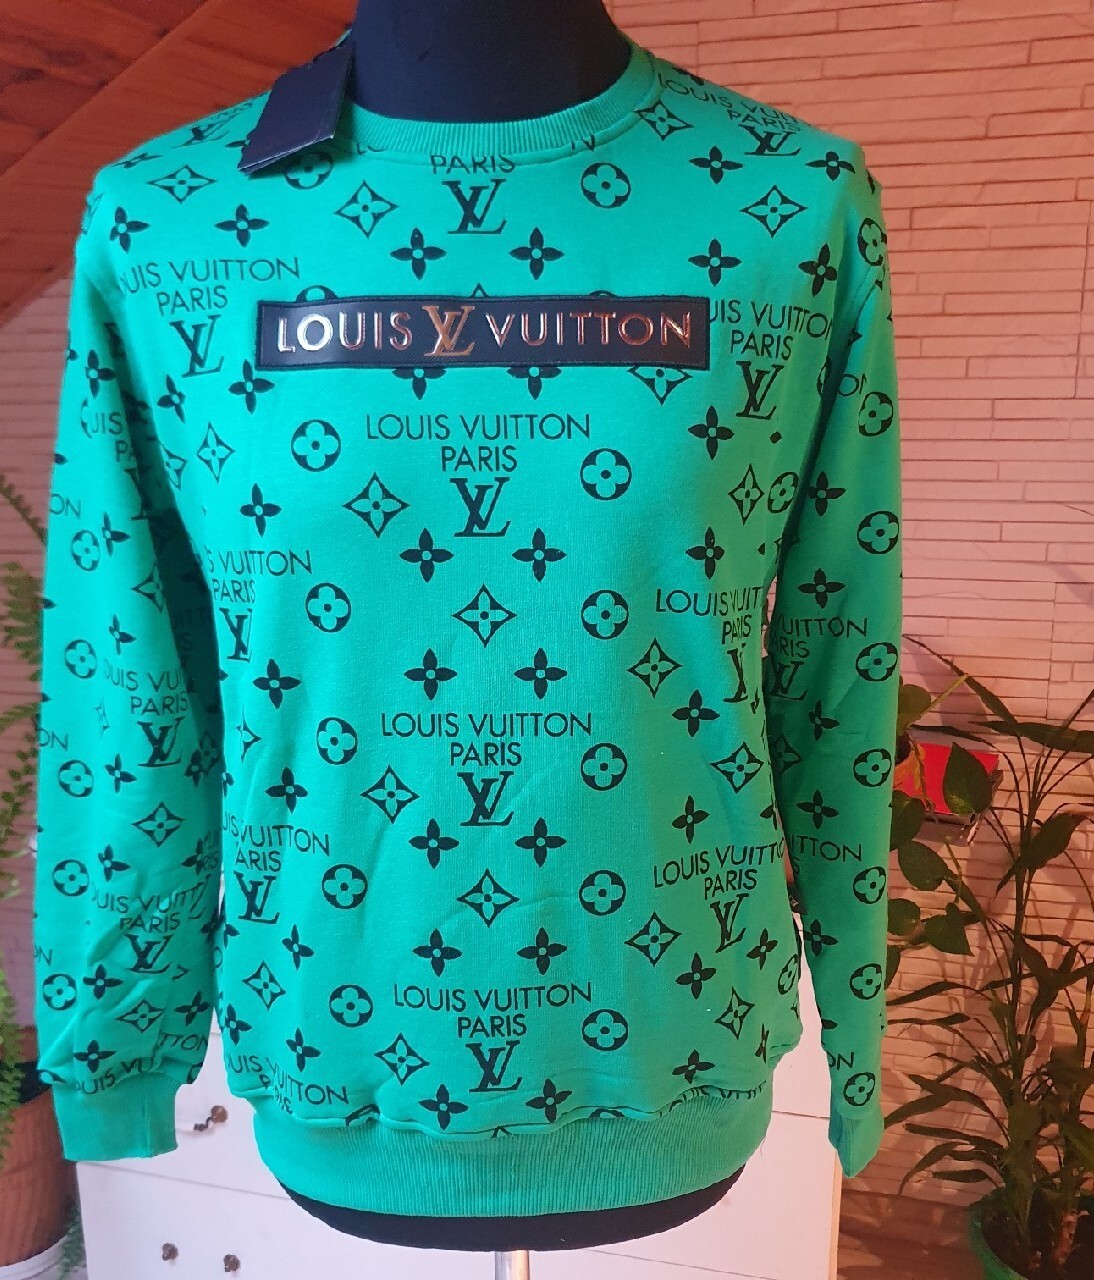 Bluza Louis Vuitton, Tułowice